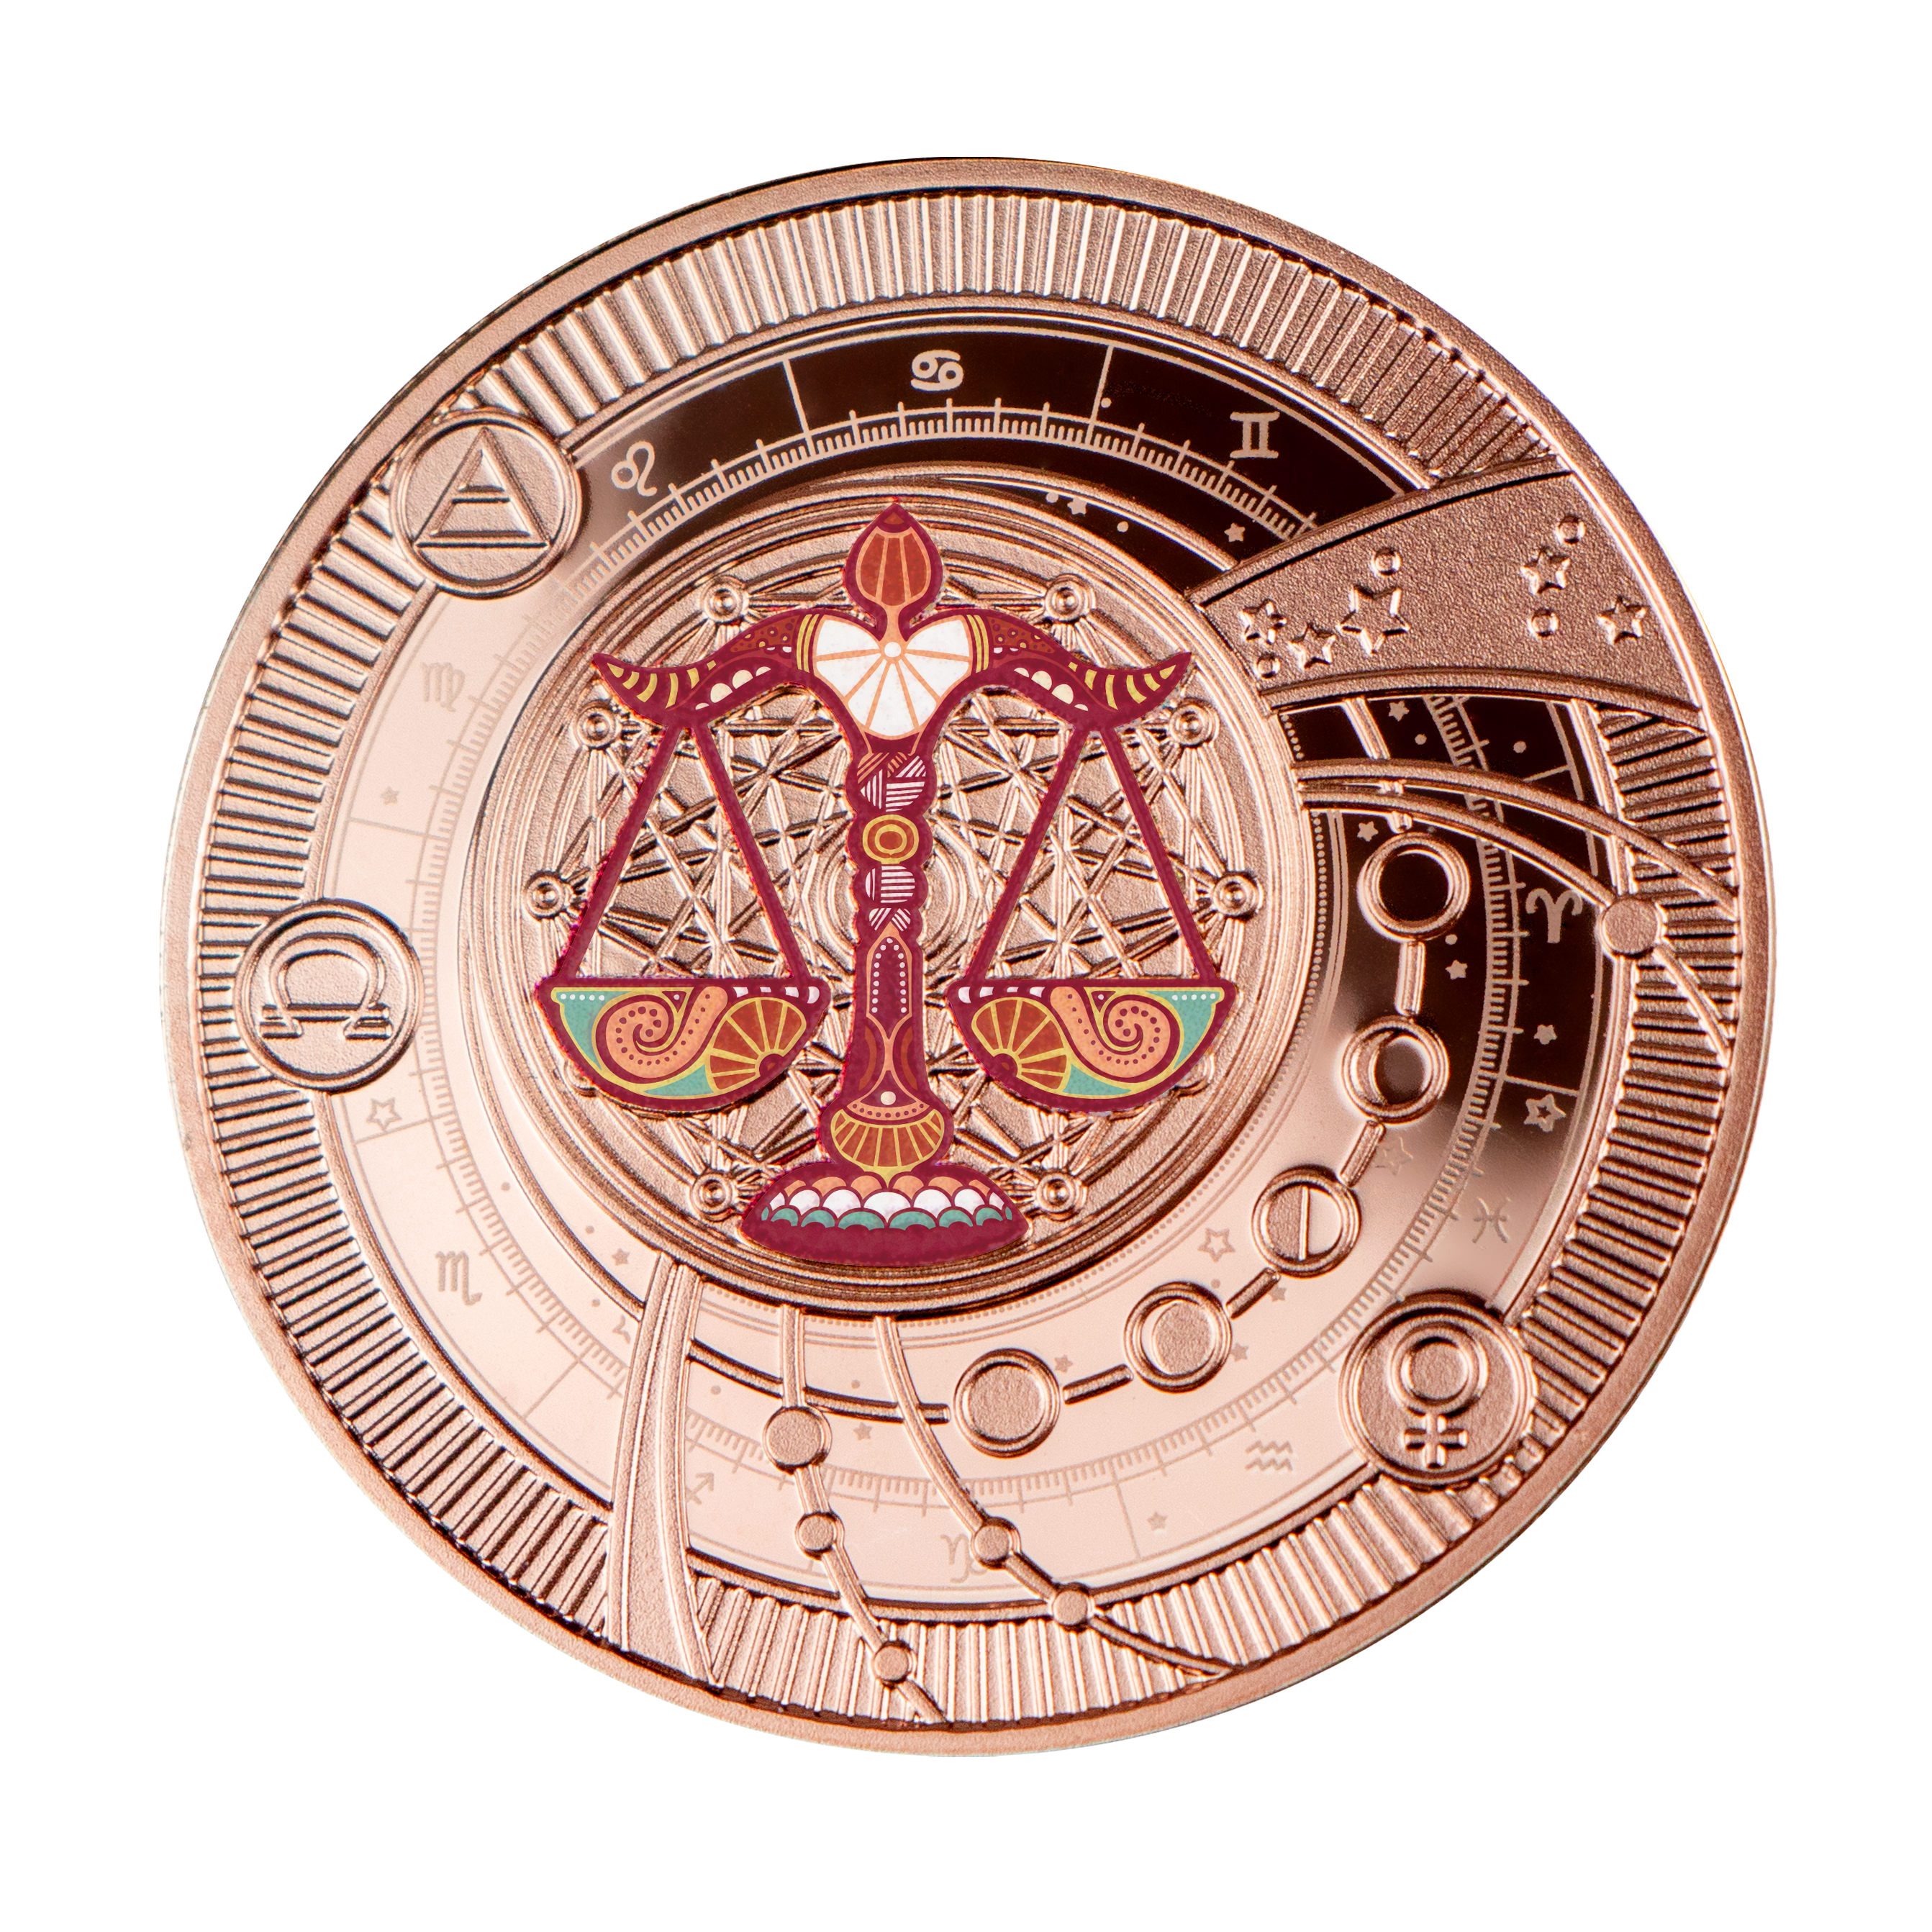 Монеты мира: Каталог иностранных монет от MTB БАНК - фото 57 - mtb.ua